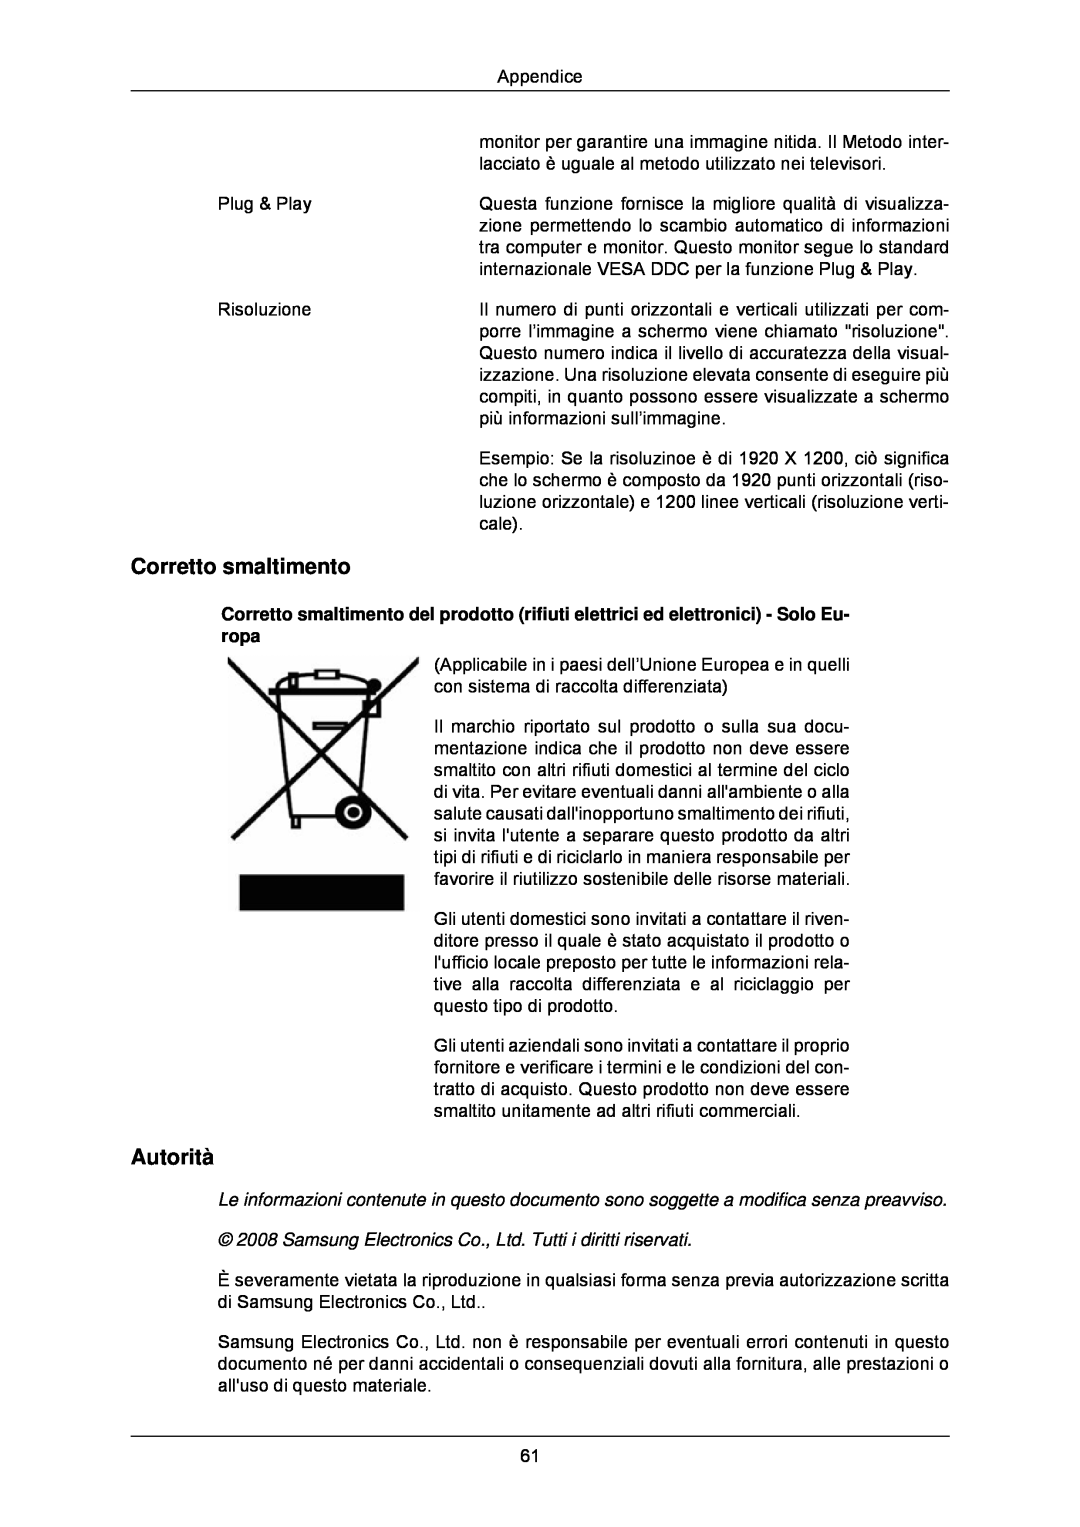 Samsung LS24CMKKFV/EN manual Corretto smaltimento, Autorità 